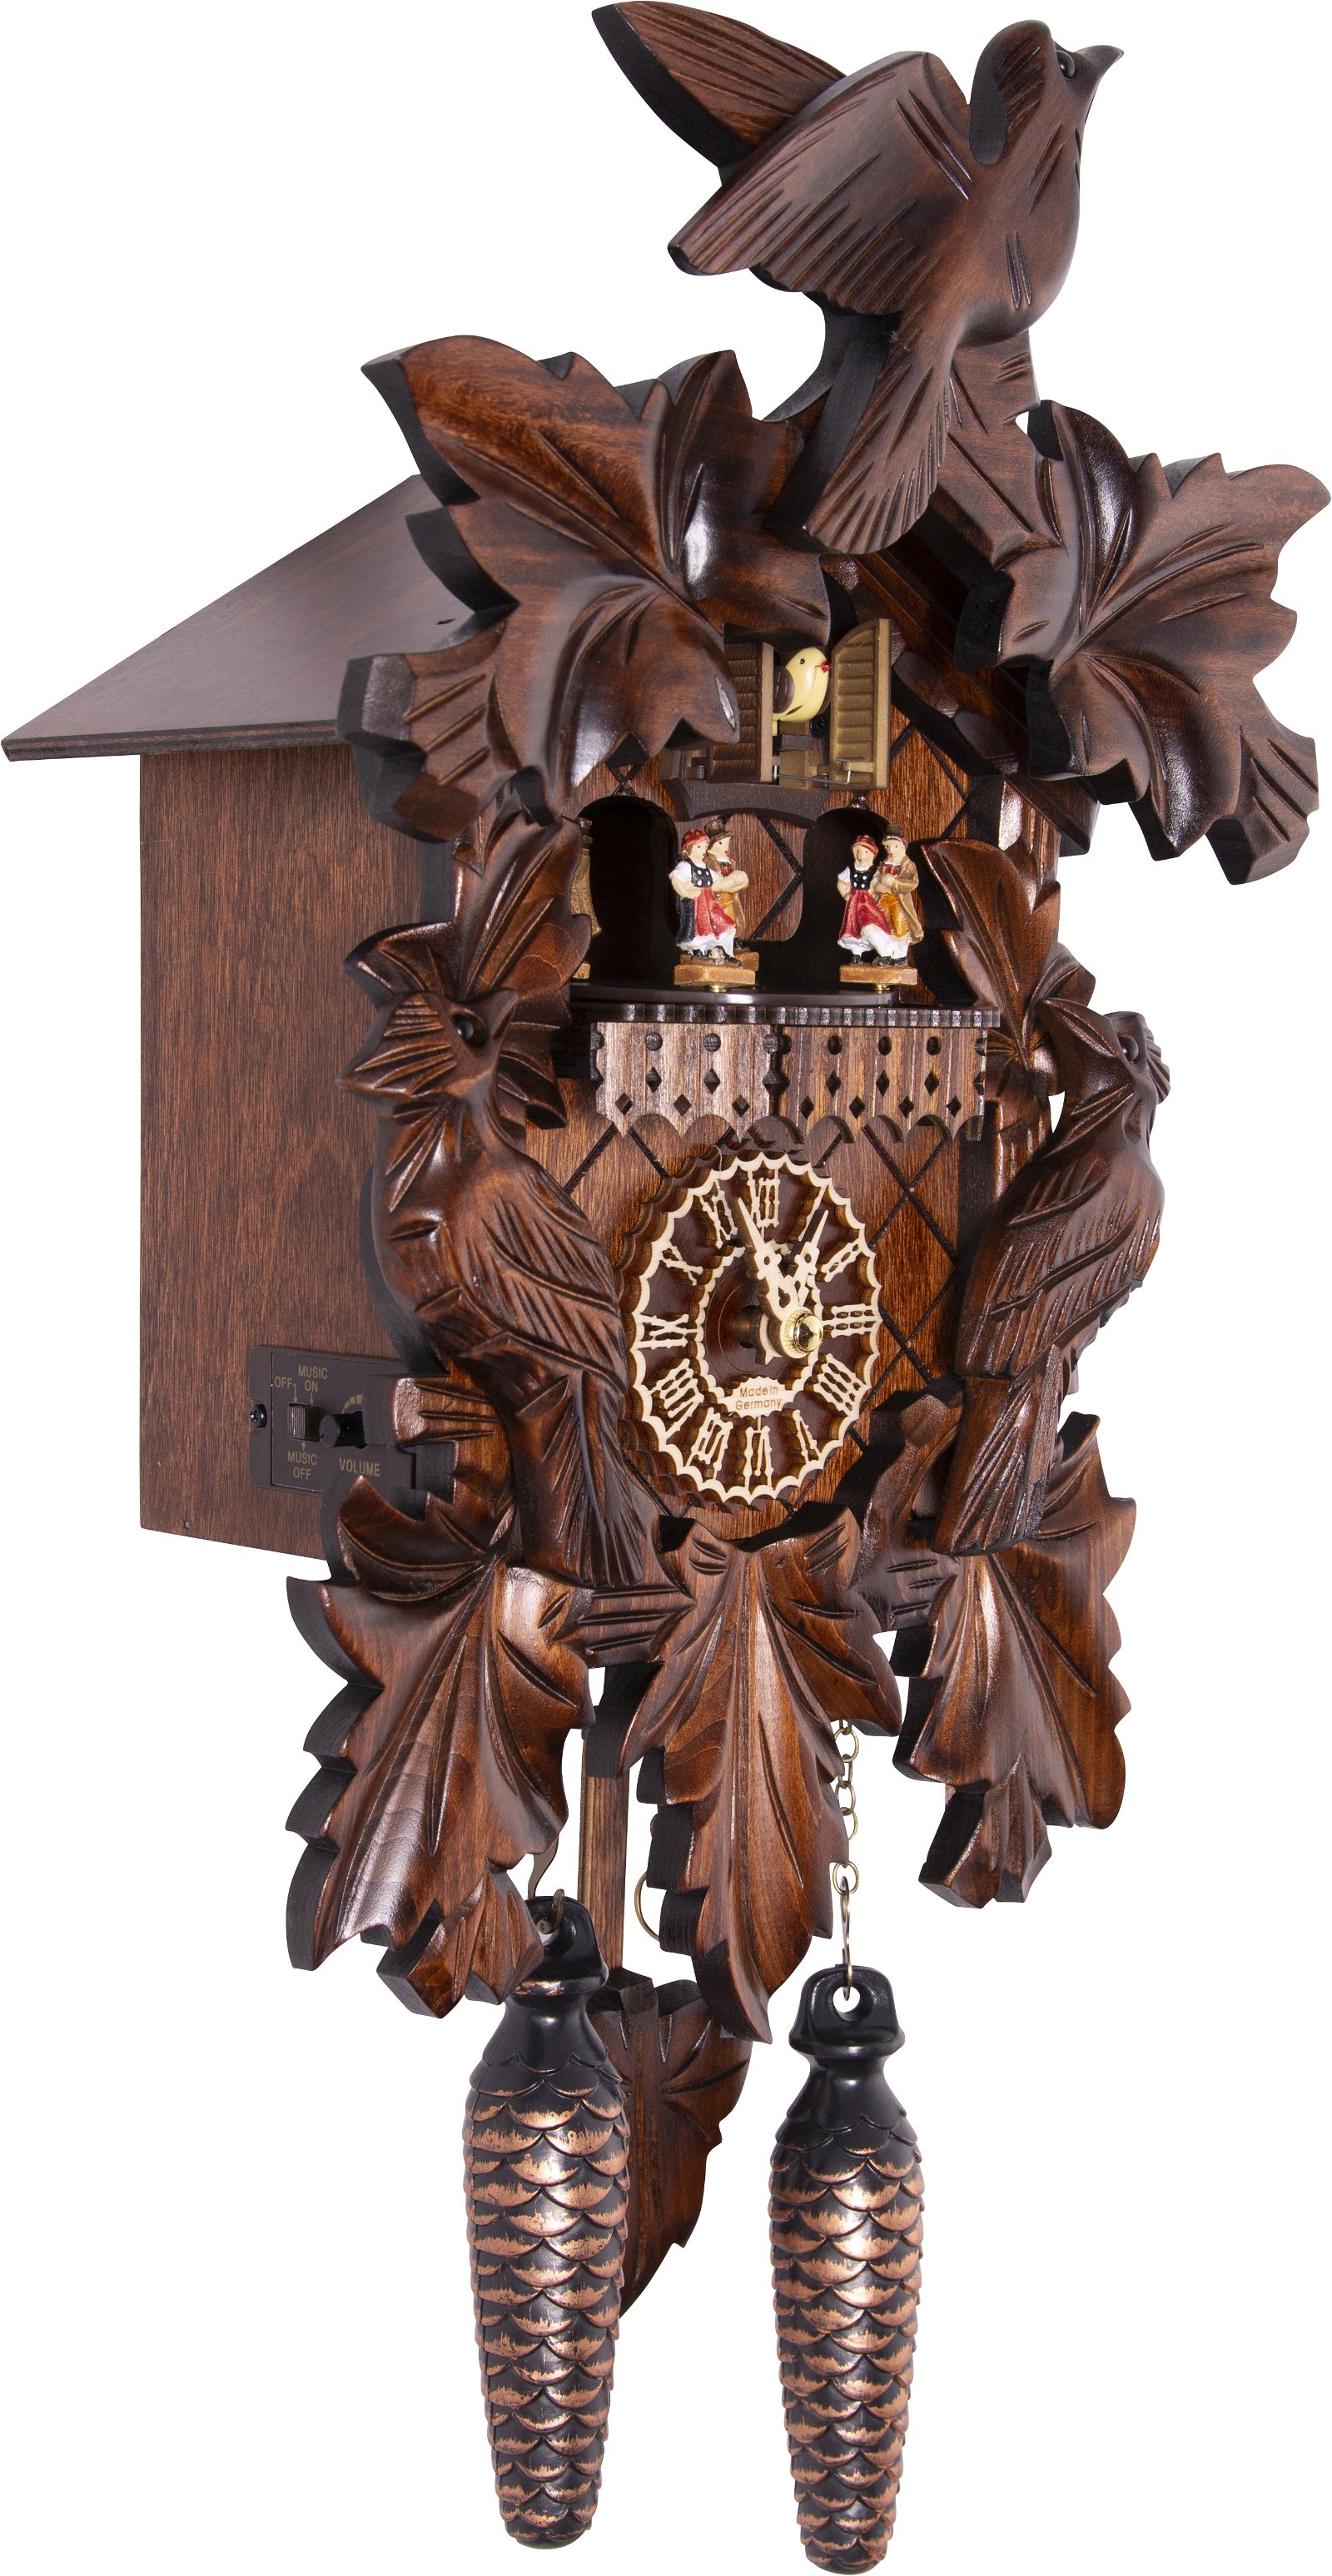 Horloge coucou traditionnelle mouvement à quartz 35cm de Trenkle Uhren